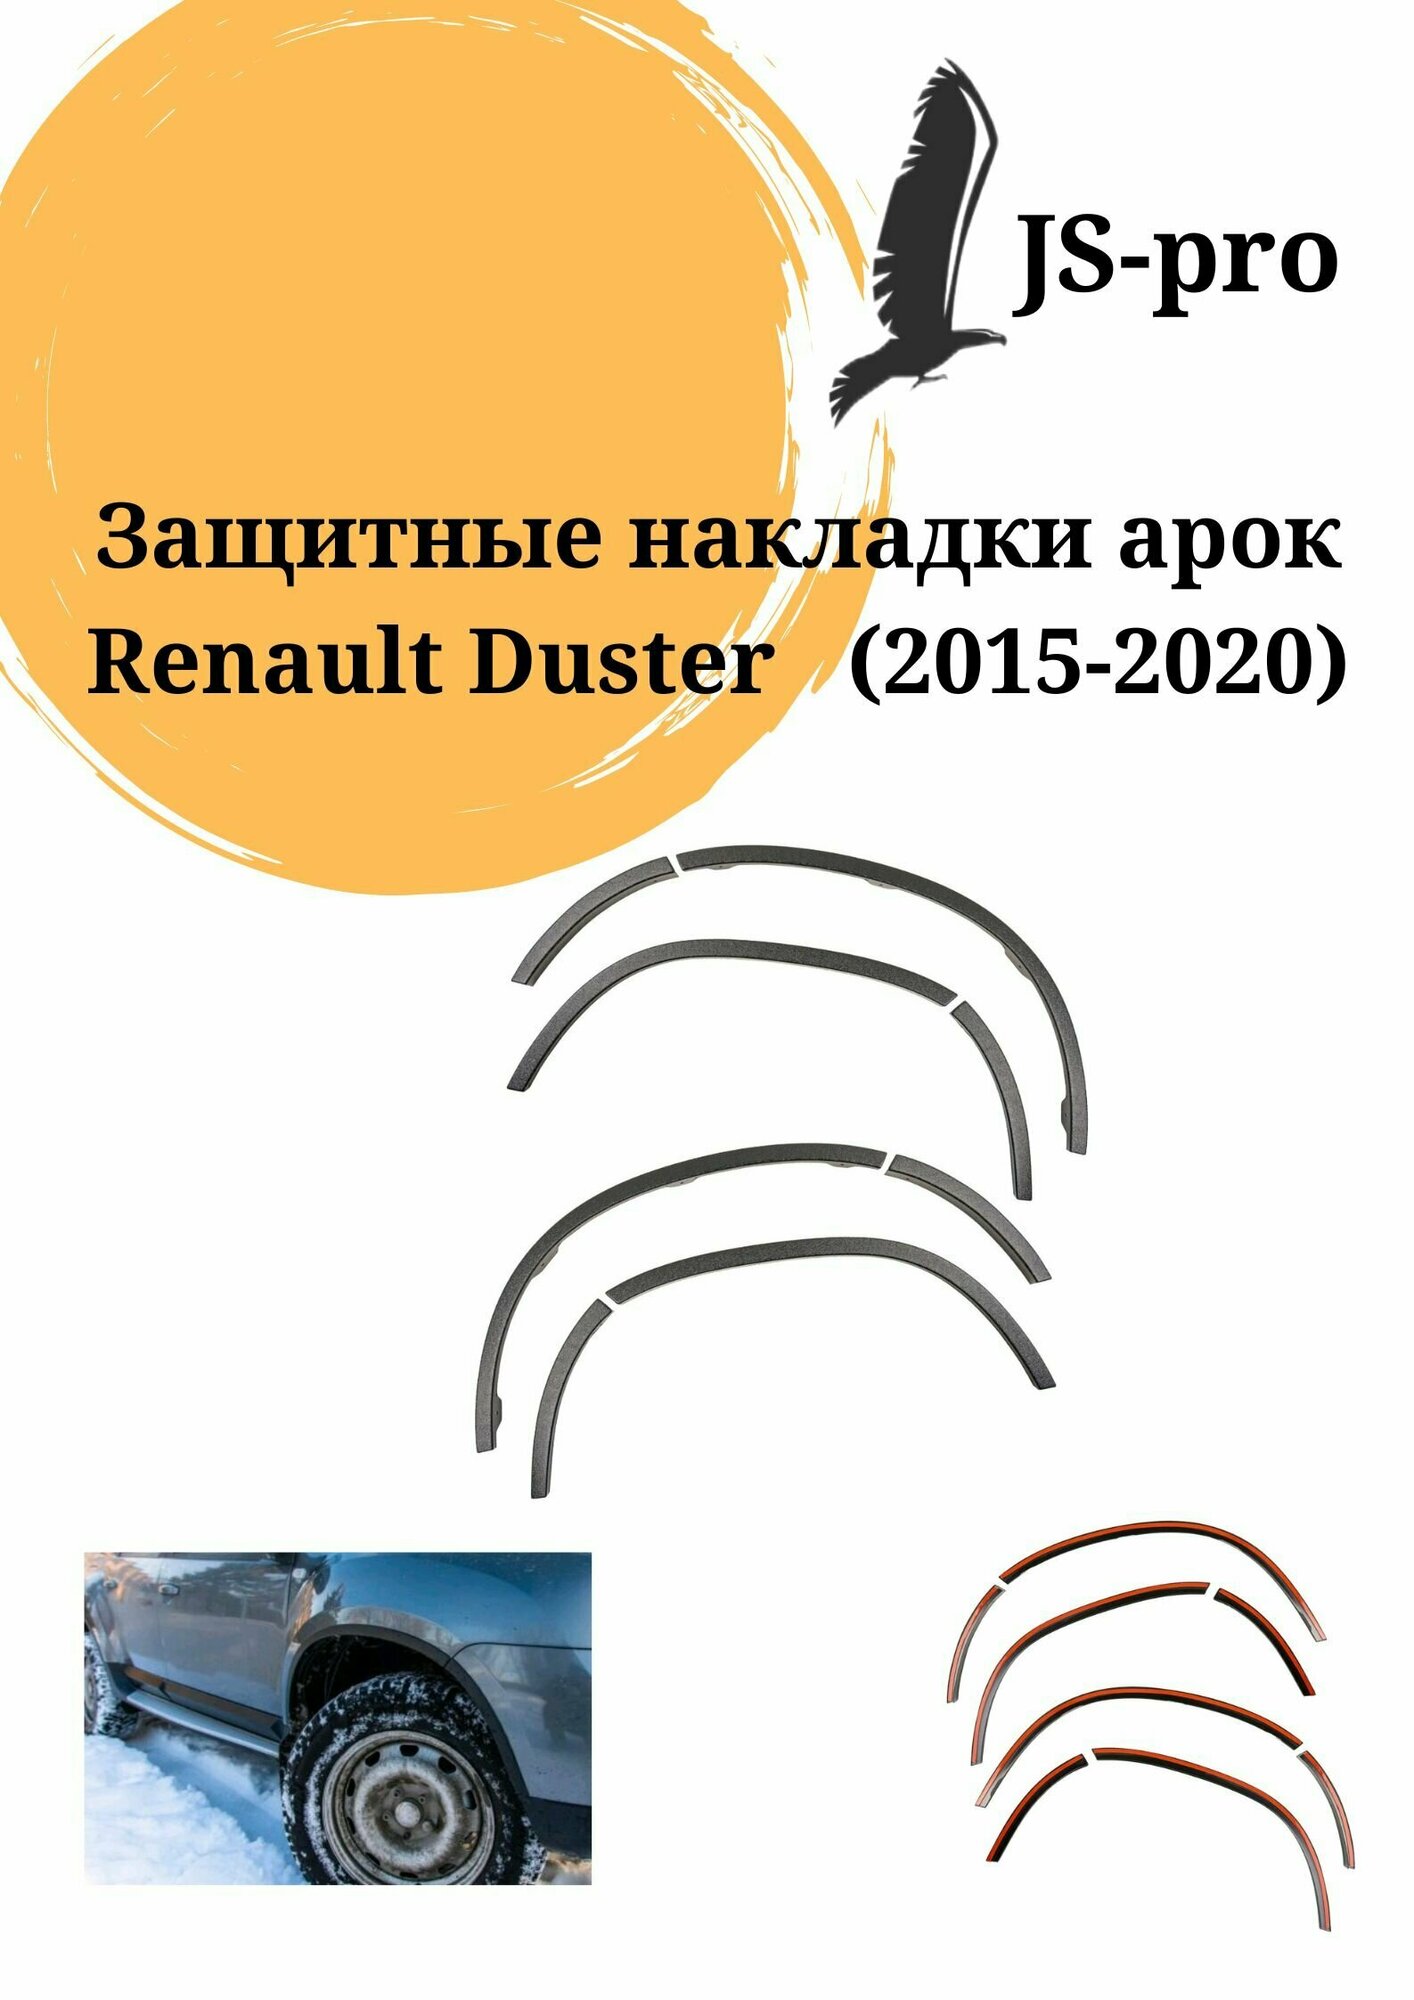 Защитные накладки на арки (АБС) Renault Duster с 2015 по 2021 г. в.